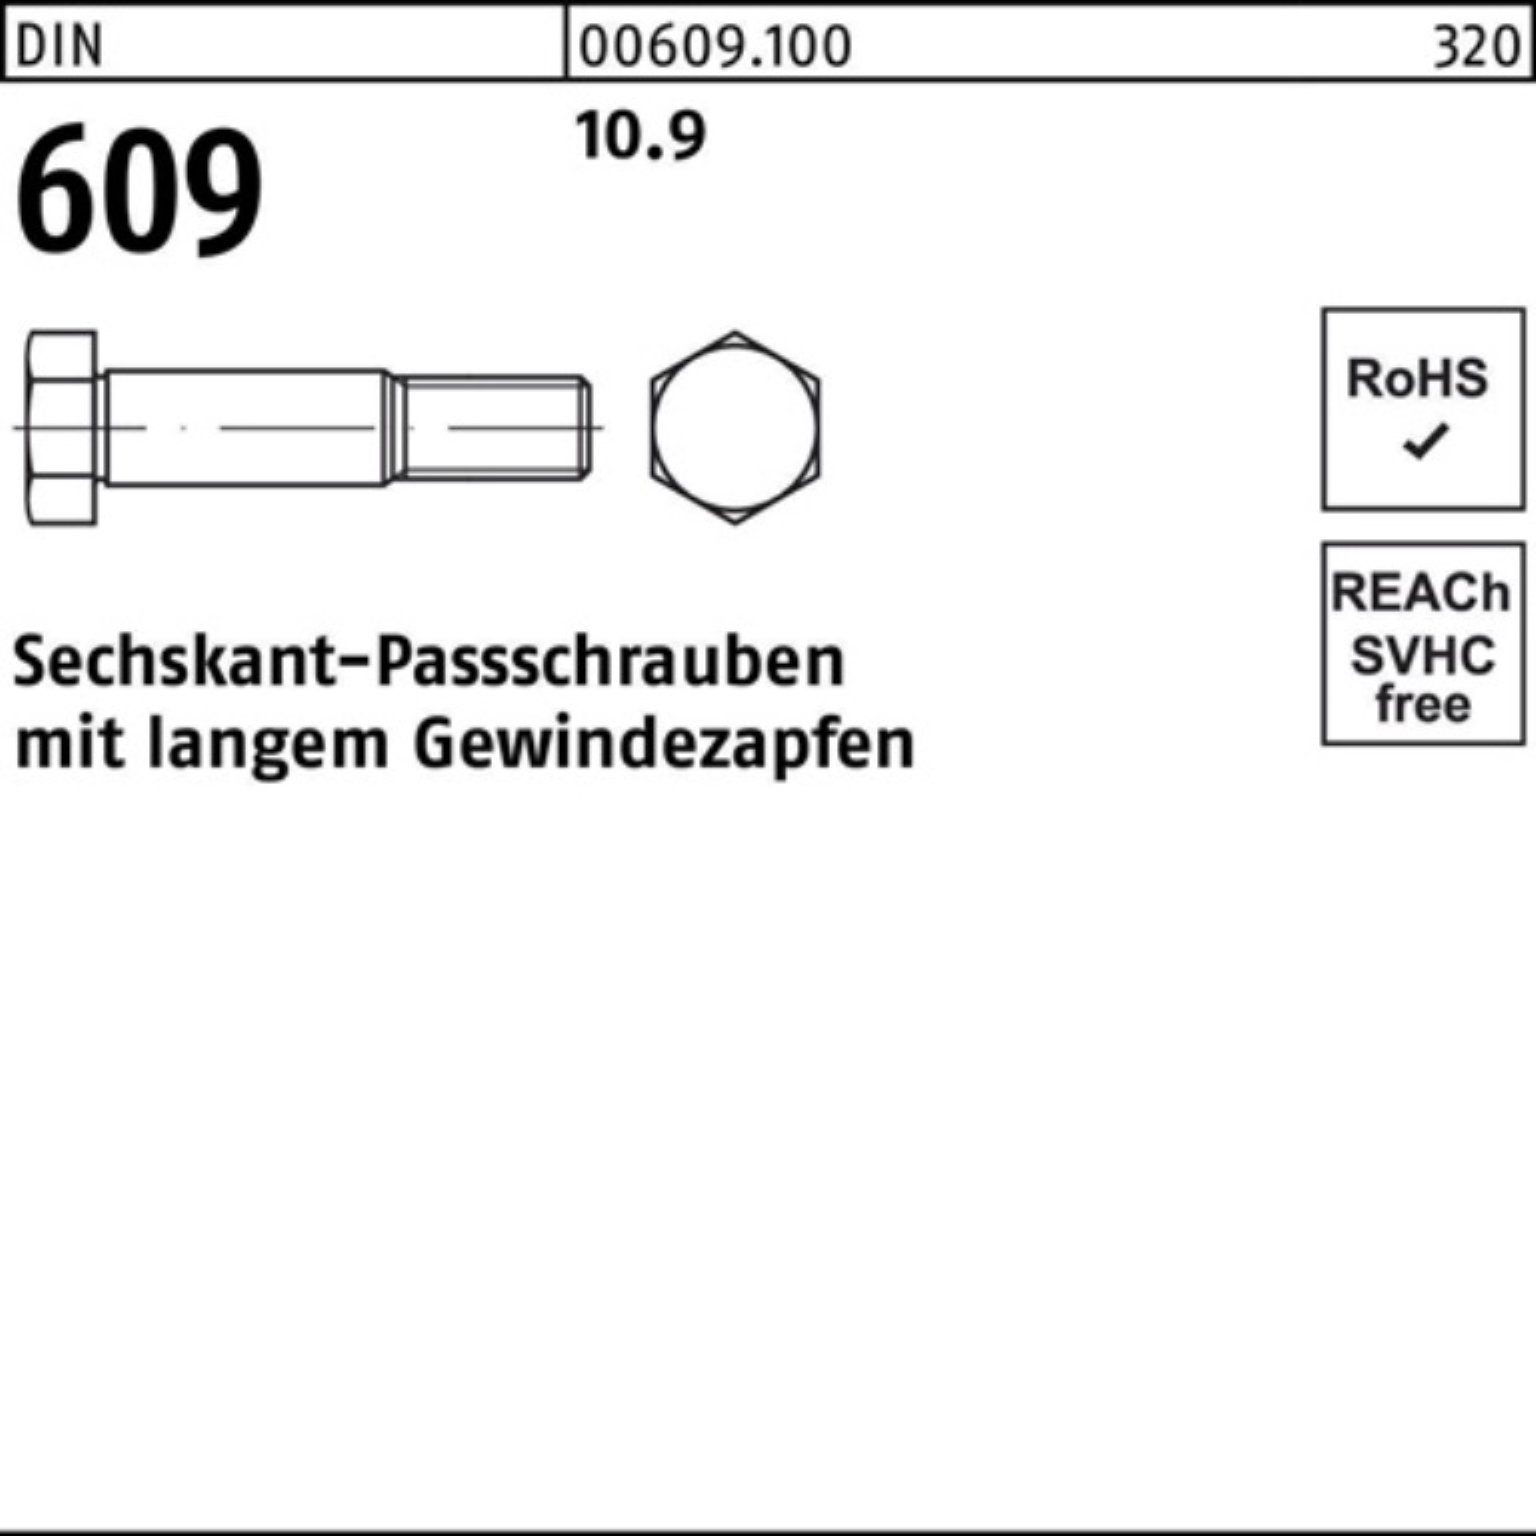 100er Gewindezapfen Sechskantpassschraube 60 Pack langem Schraube Reyher M20x DIN 609